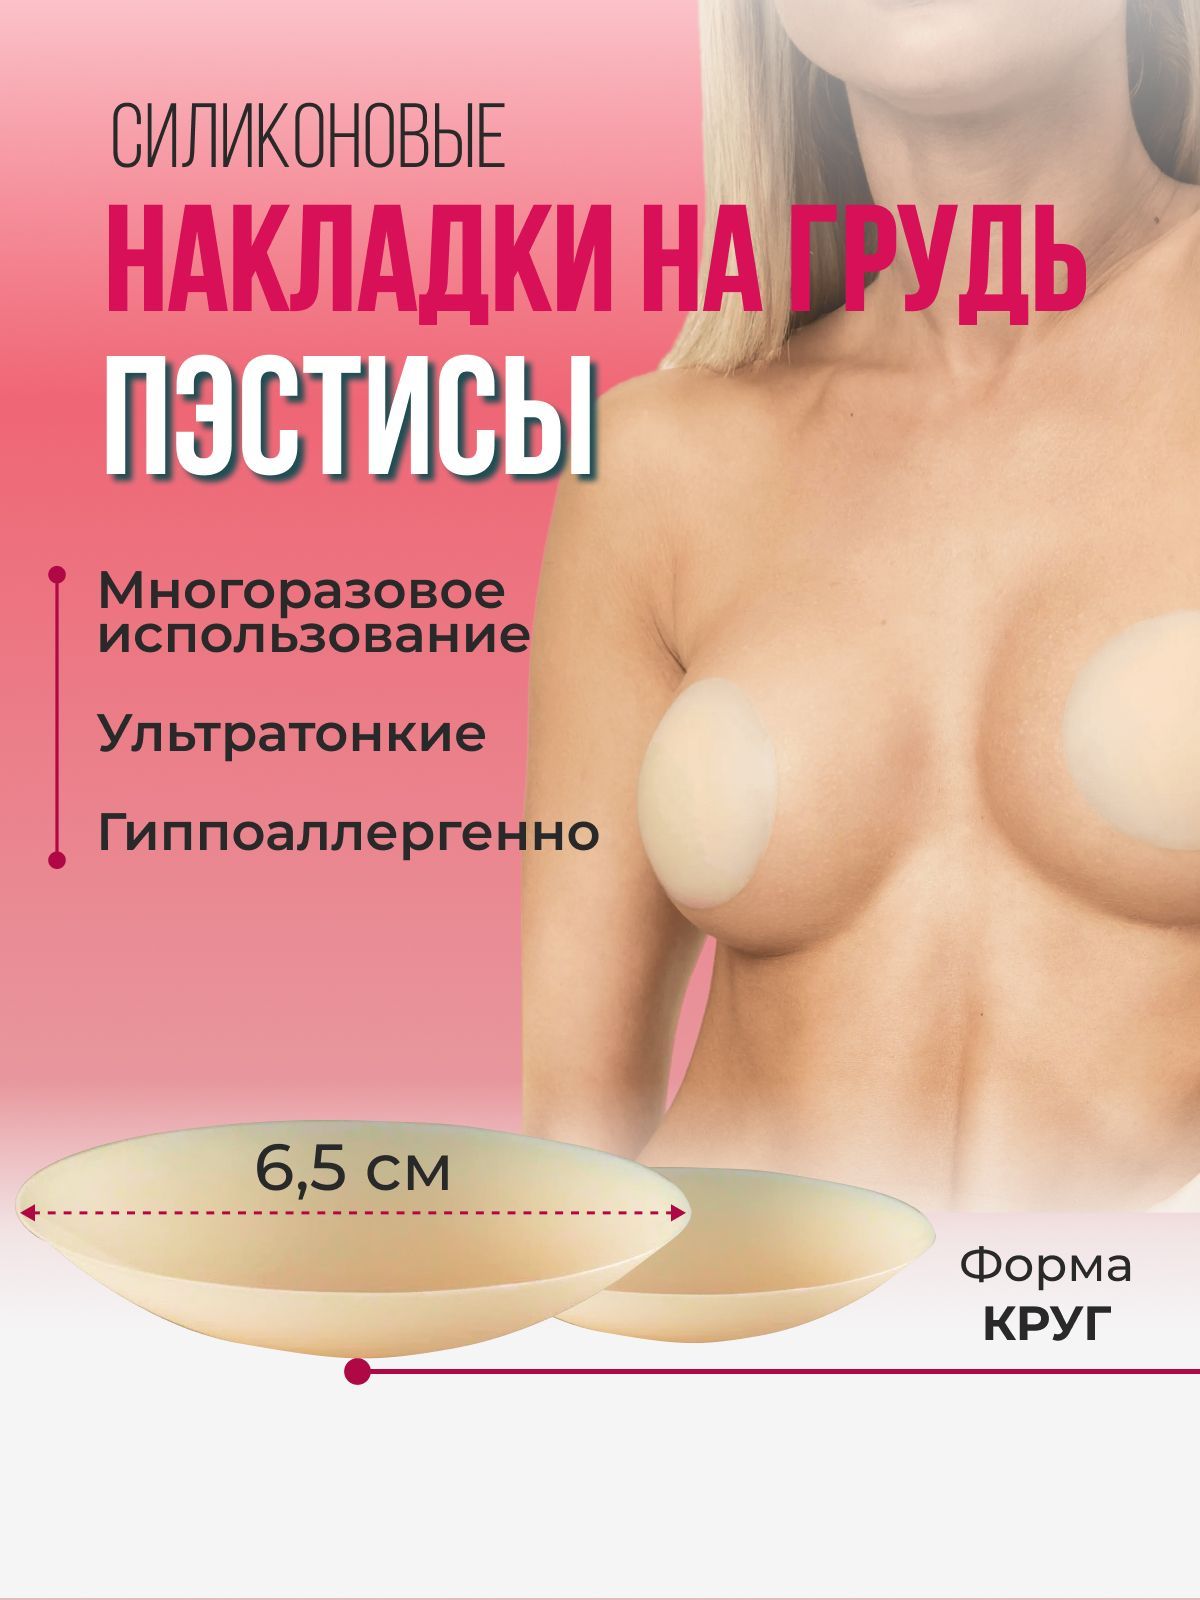 Якорная подтяжка груди в Москве - цены, фото